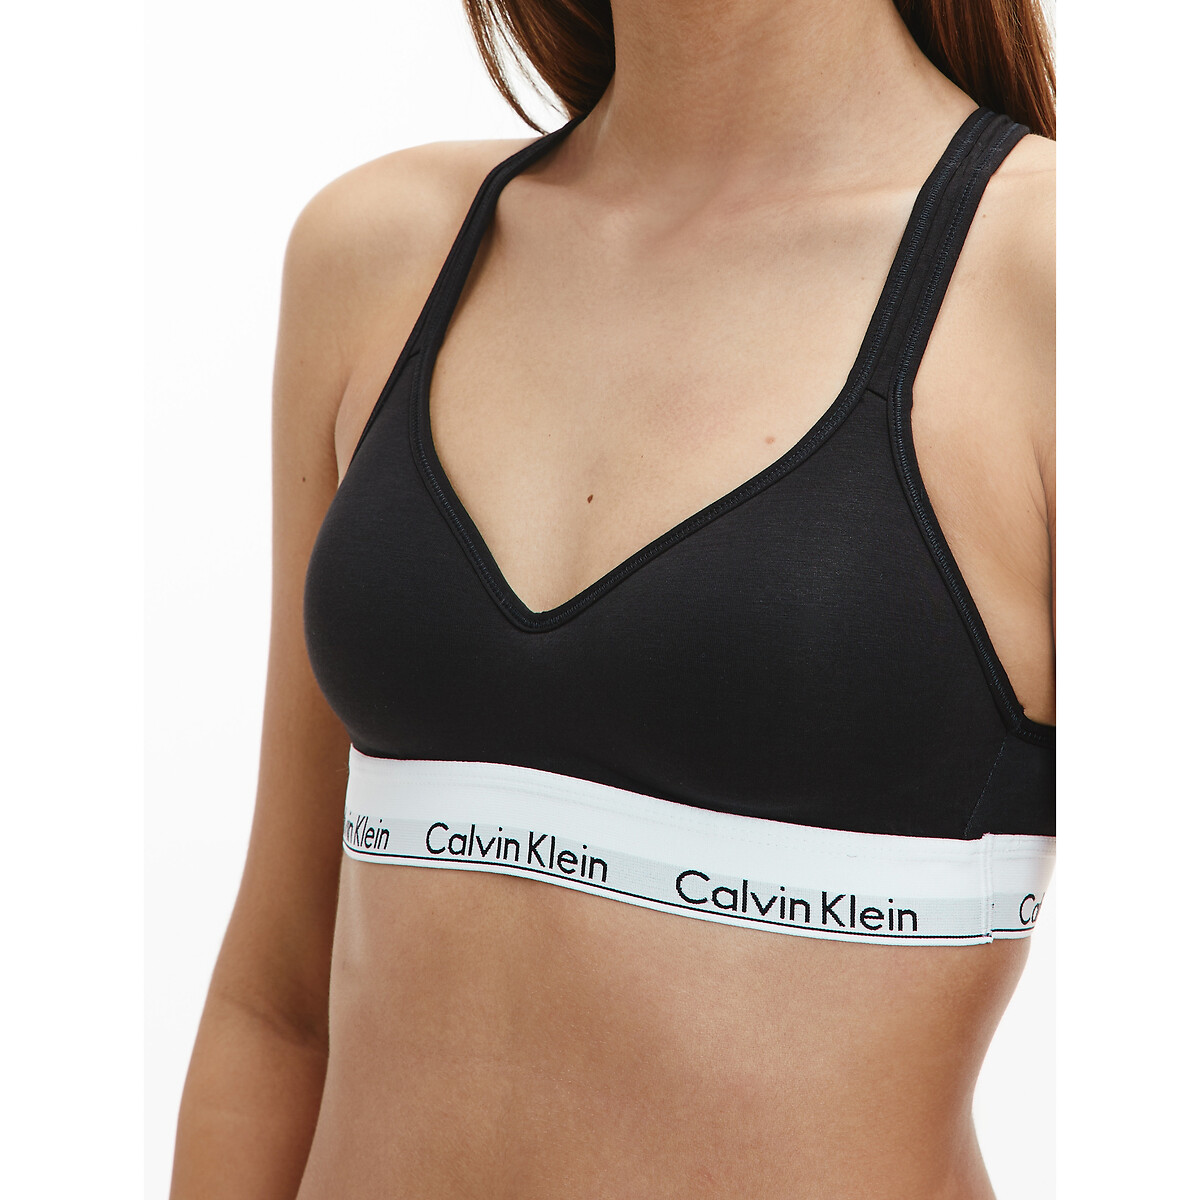 Bustier-bh mit Klein | Redoute Underwear La logo-schriftzug Calvin